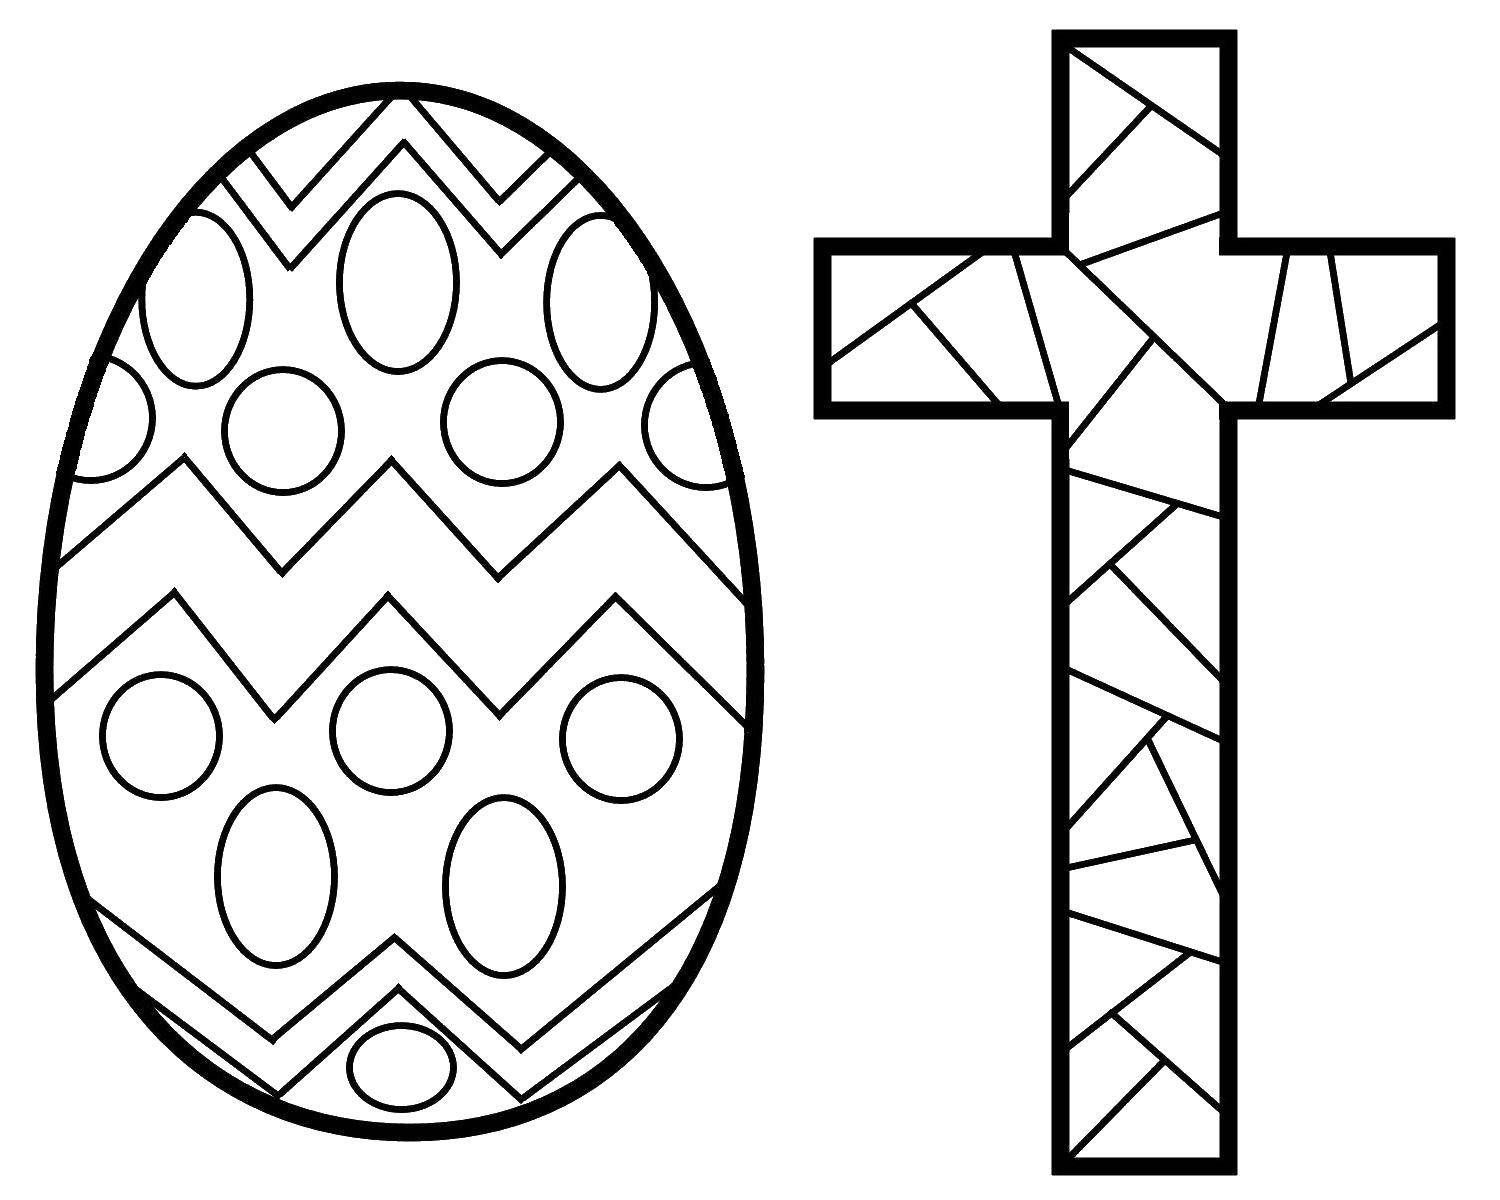 Название: Раскраска Пасха. Категория: пасха. Теги: Пасха, праздник, яйцо, крест.